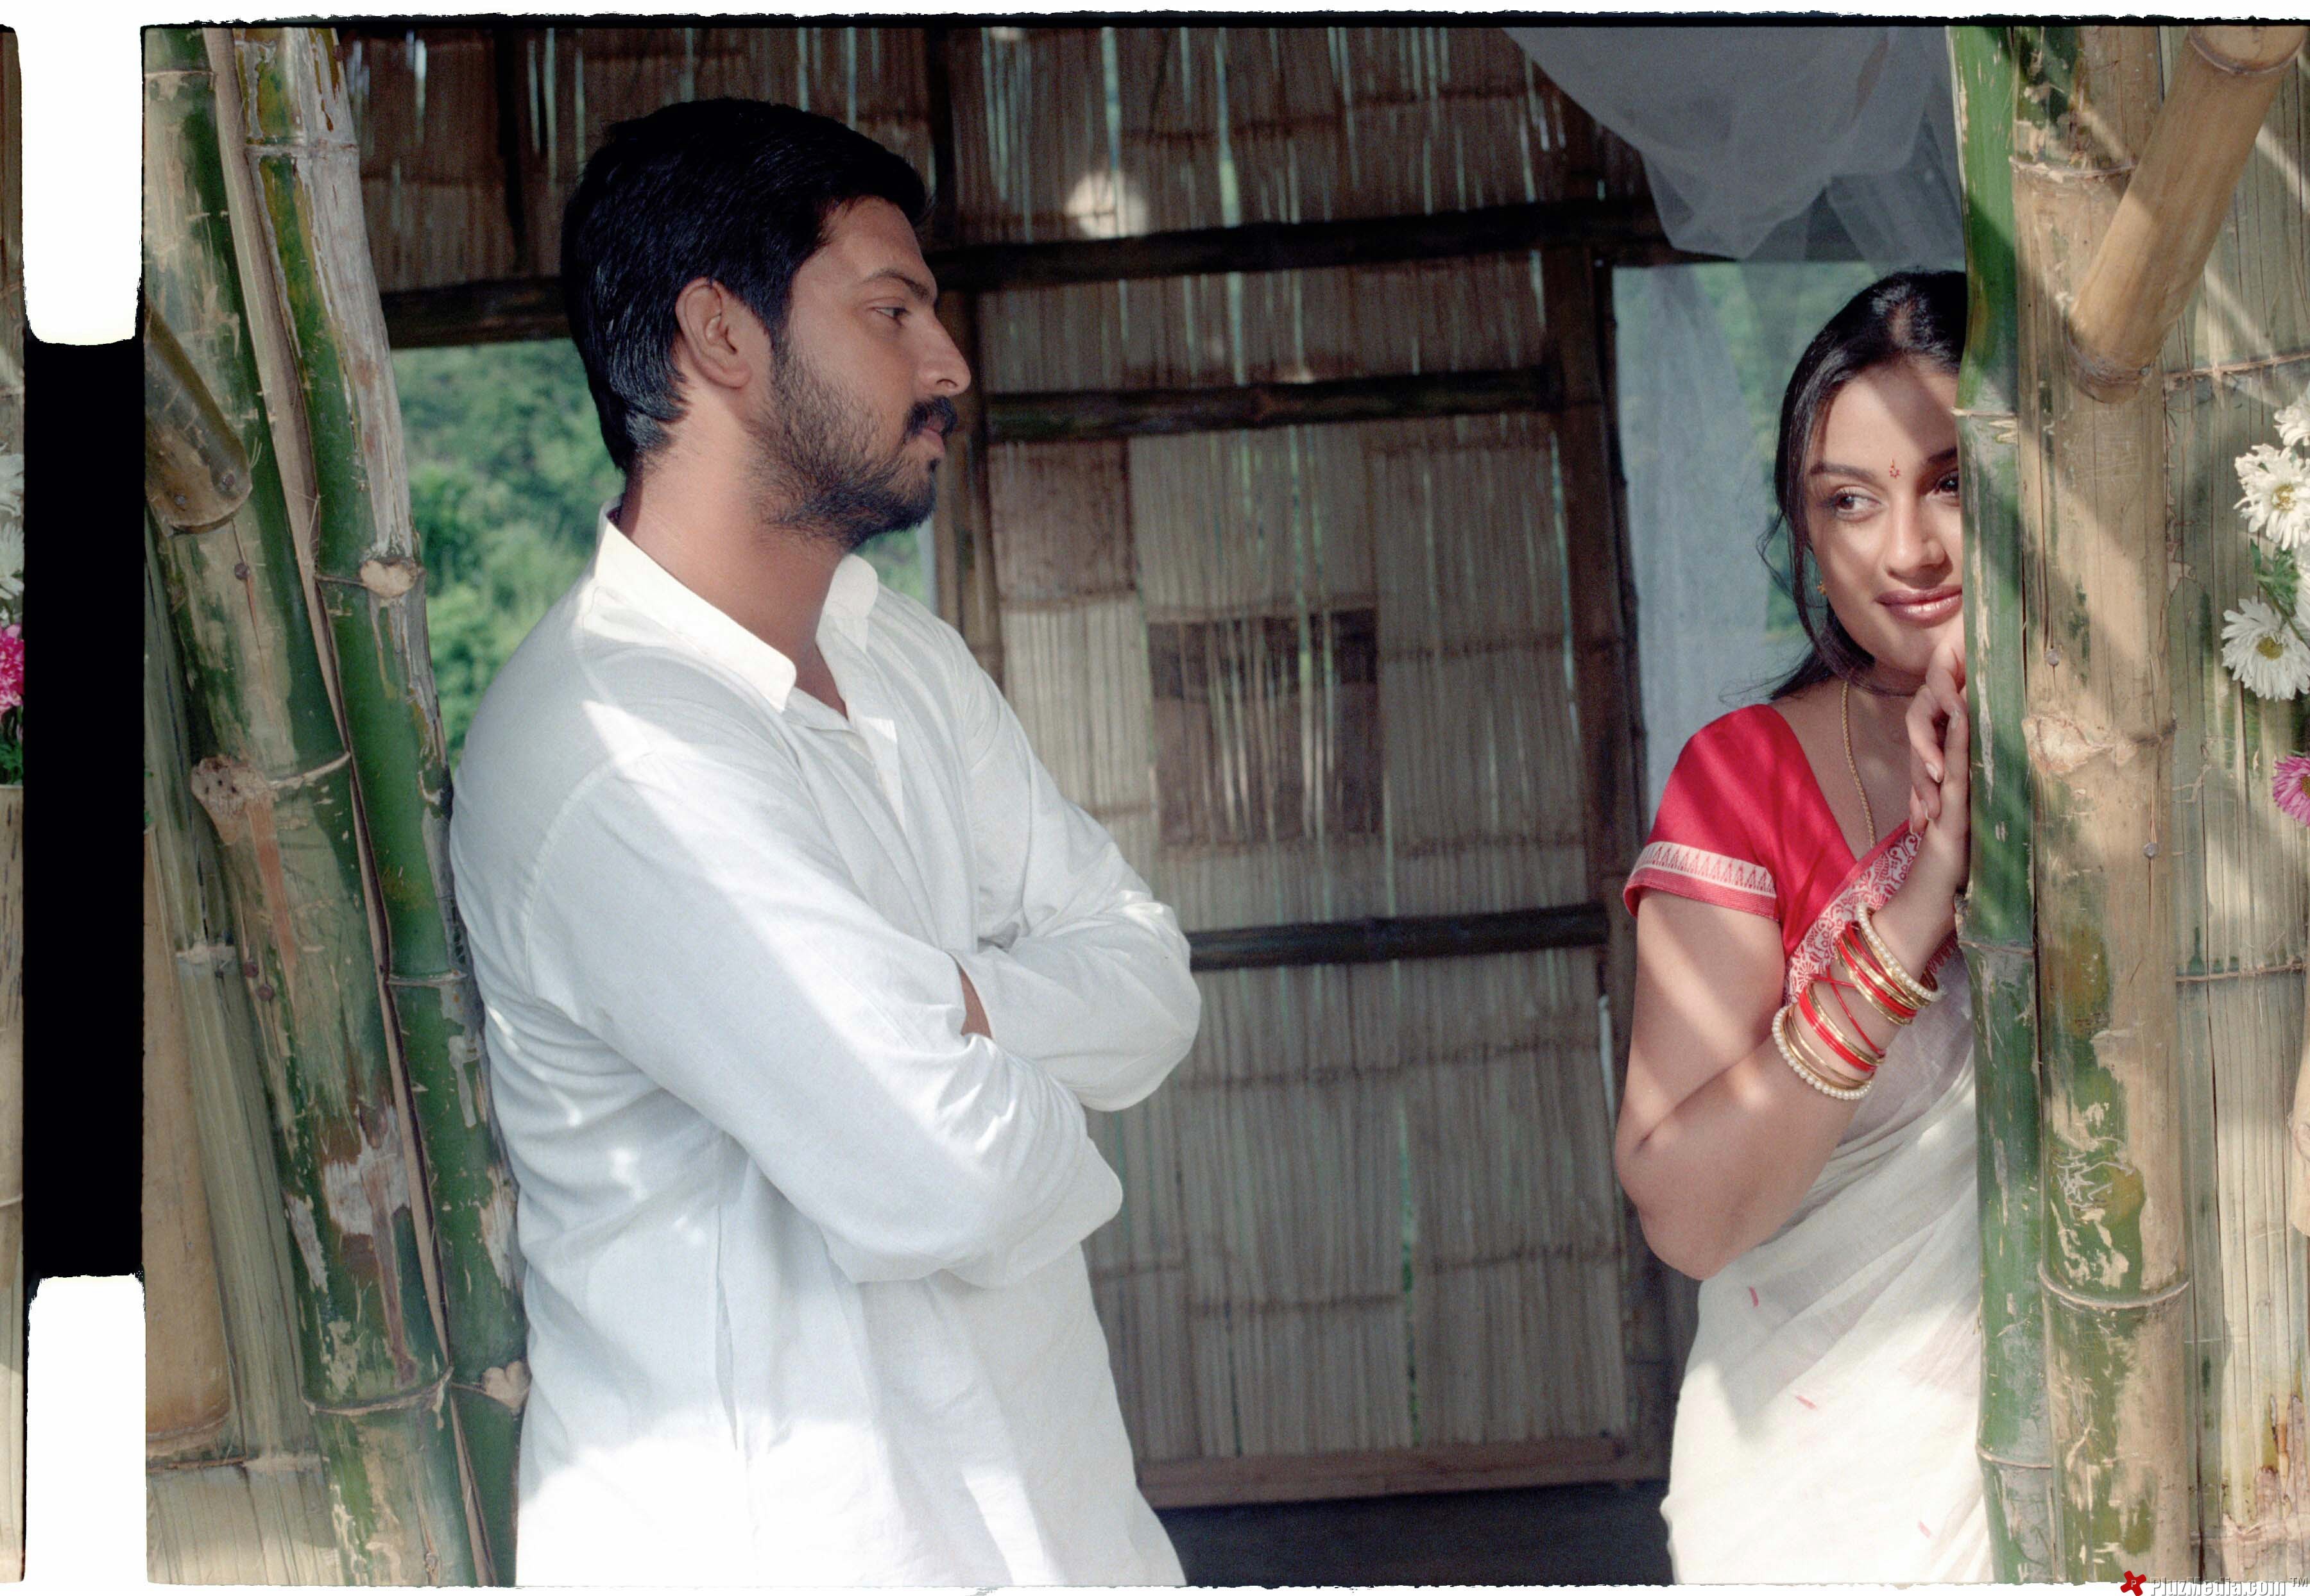 Srikanth's Sadhurangam Movie Stills | Picture 97083